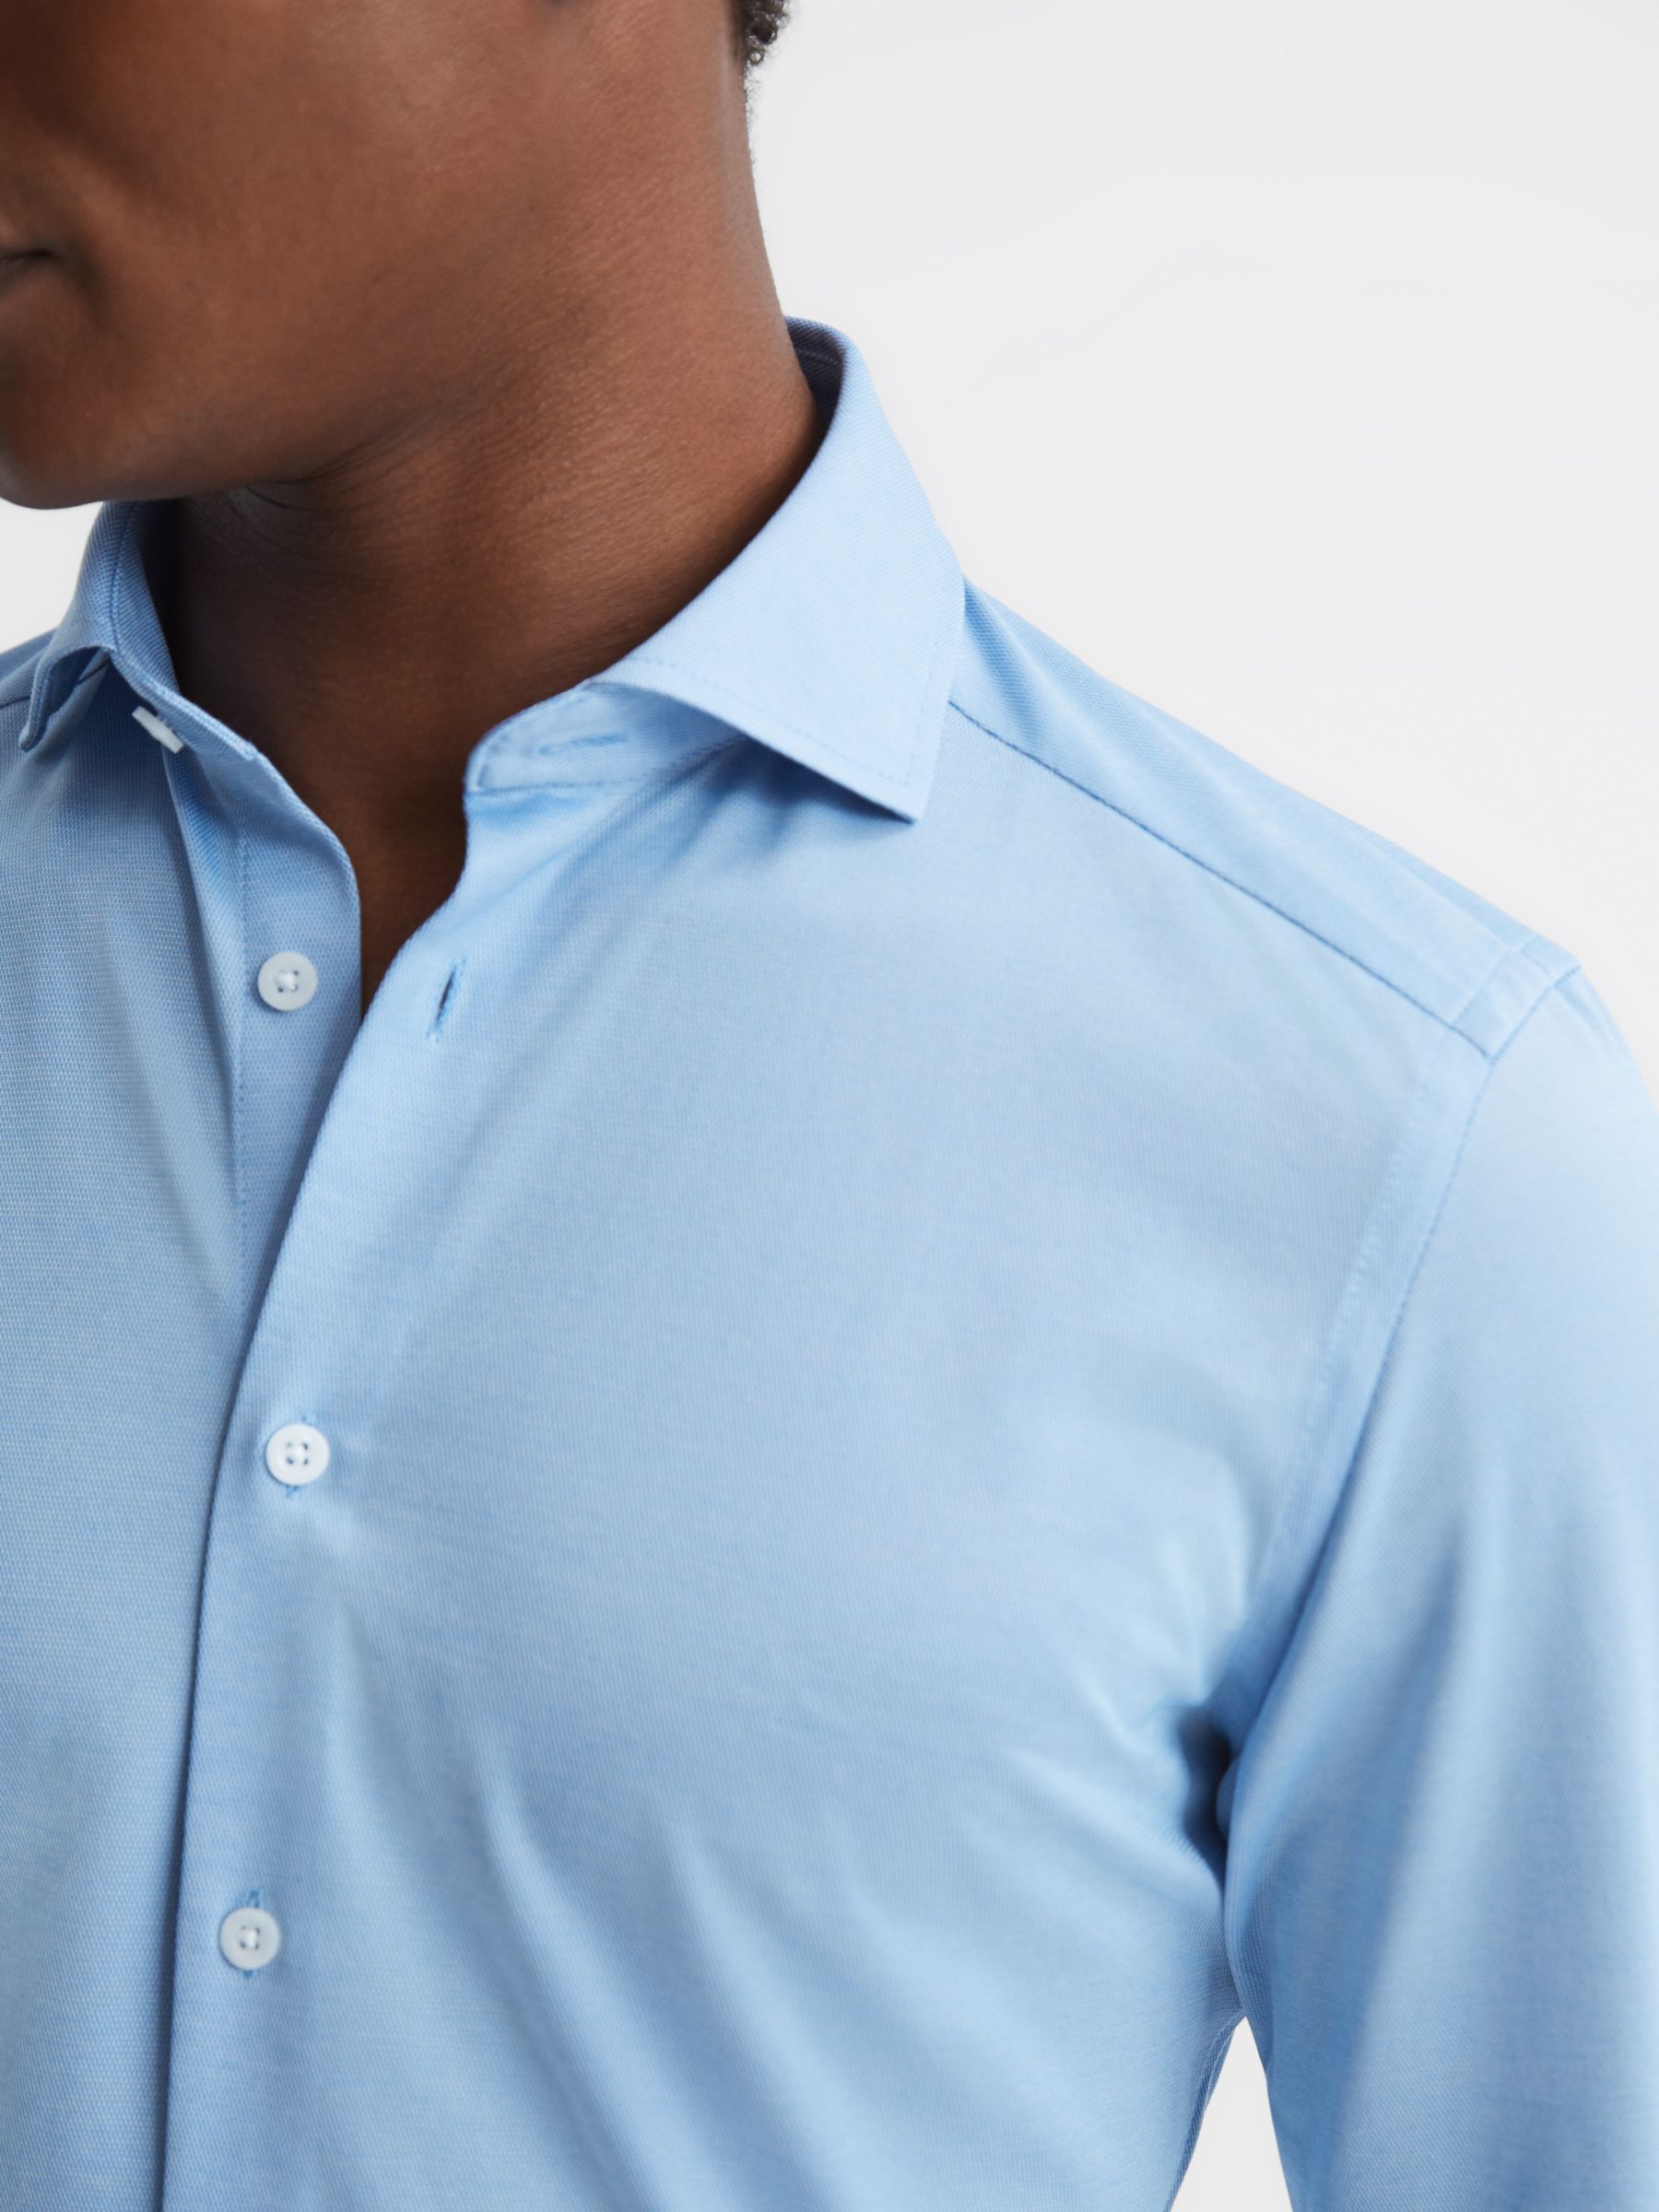 Reiss Nate Slim Fit Cutaway Collar Jersey Shirt, Soft Blue, XS